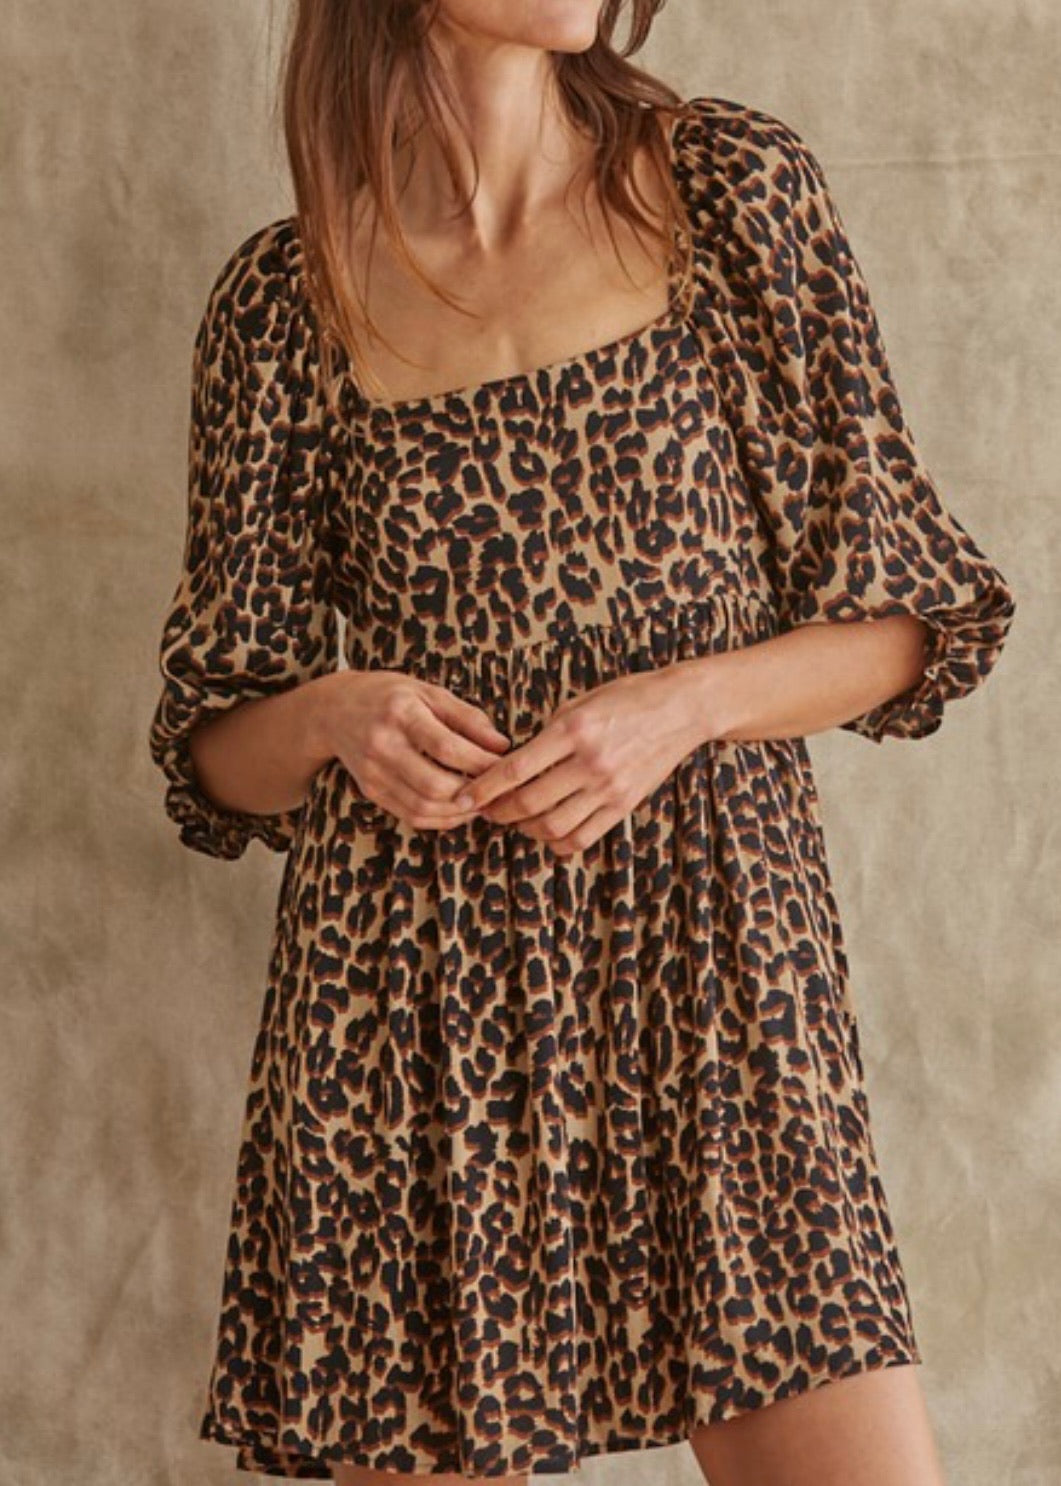 Wild Child Leopard Dress